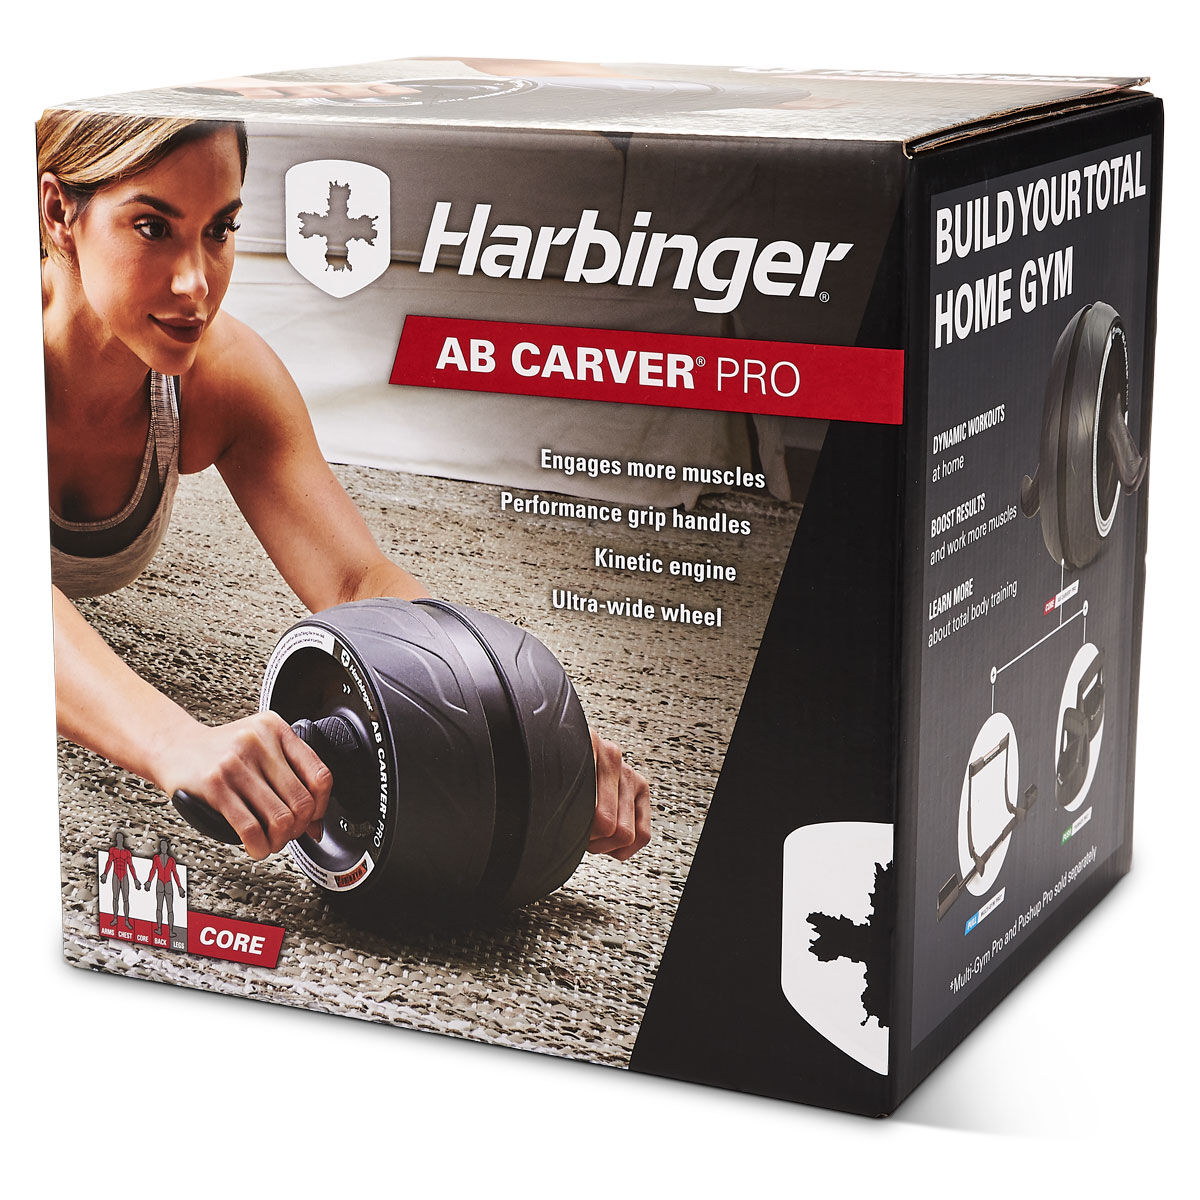 Harbinger Ab Carver Pro Training Aid